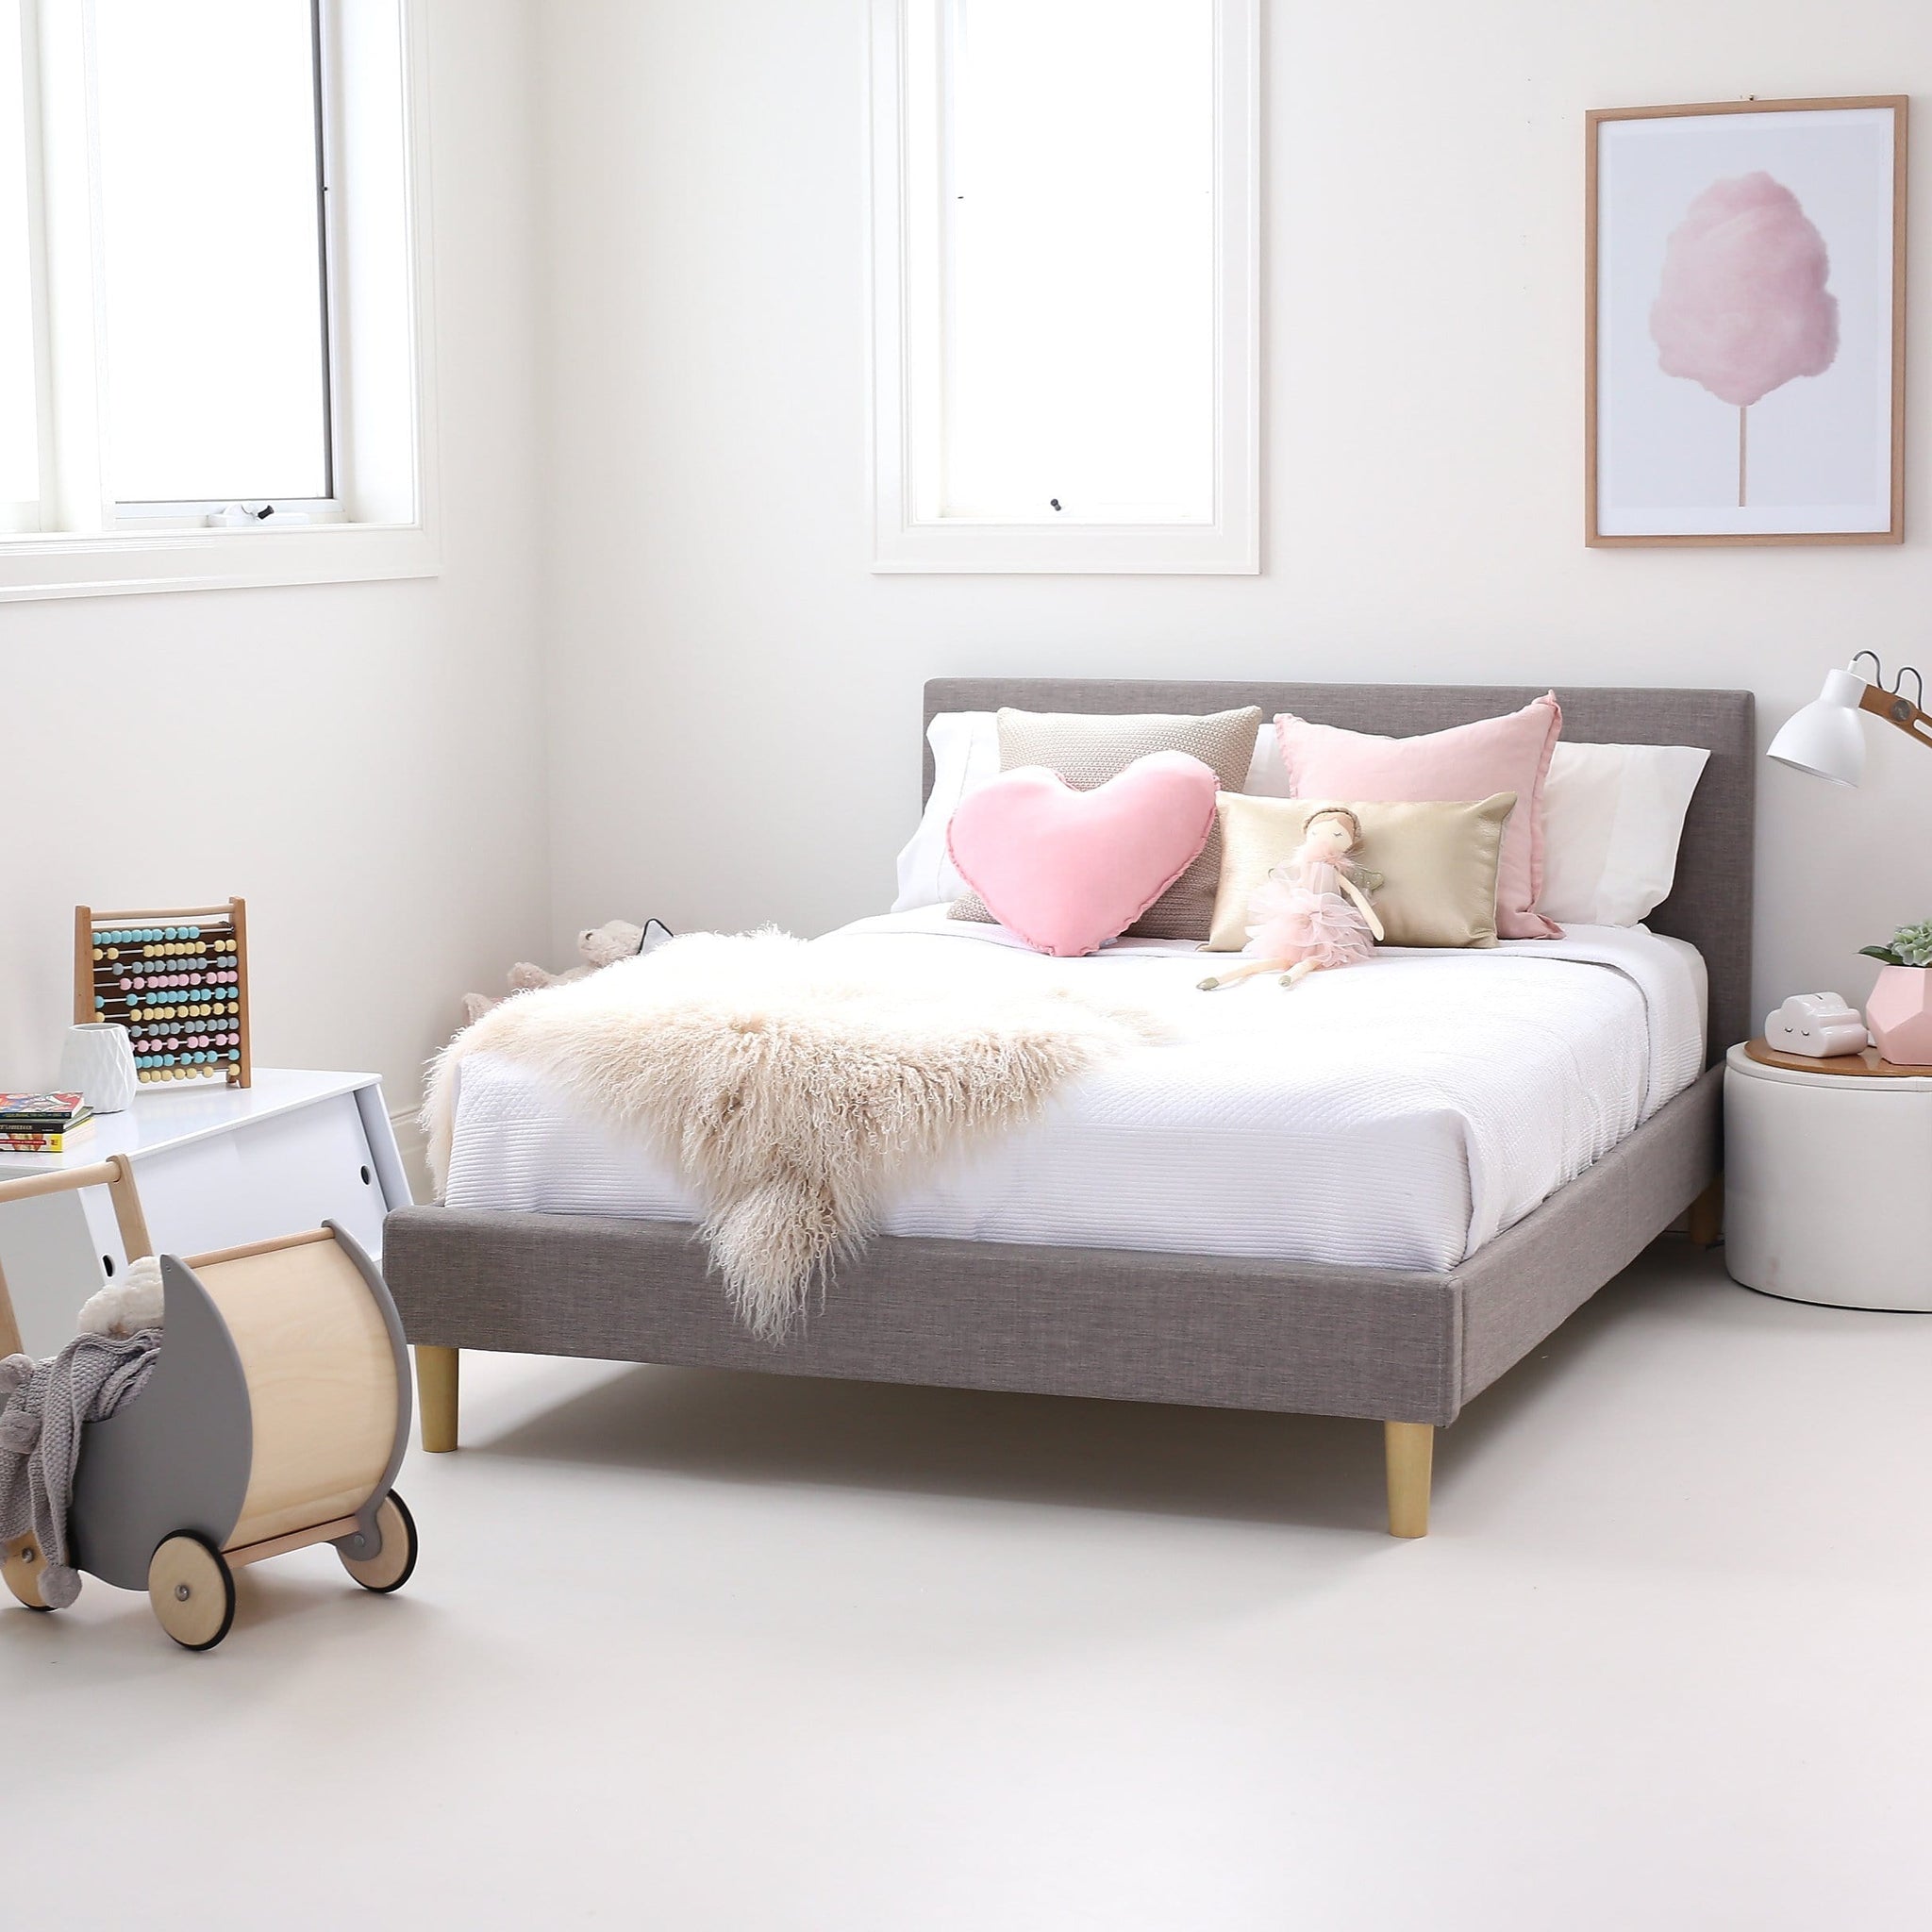 Kids Bedroom Furniture That Promotes Big Imagination